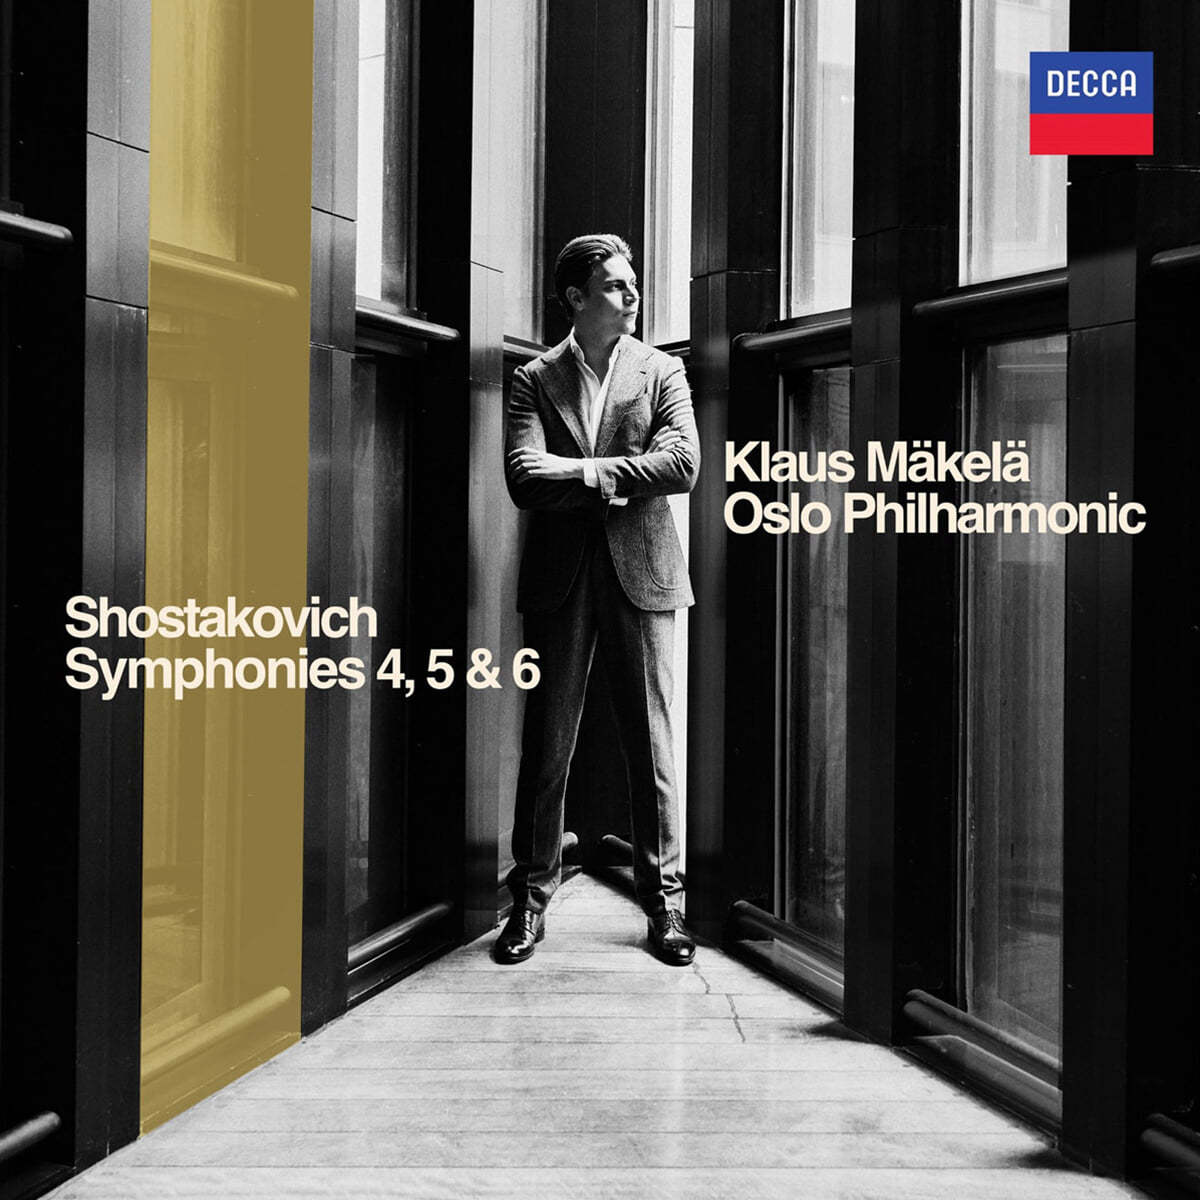 Klaus Mäkelä 쇼스타코비치: 교향곡 4, 5, 6번 (Shostakovich: Symphonies 4, 5 & 6)